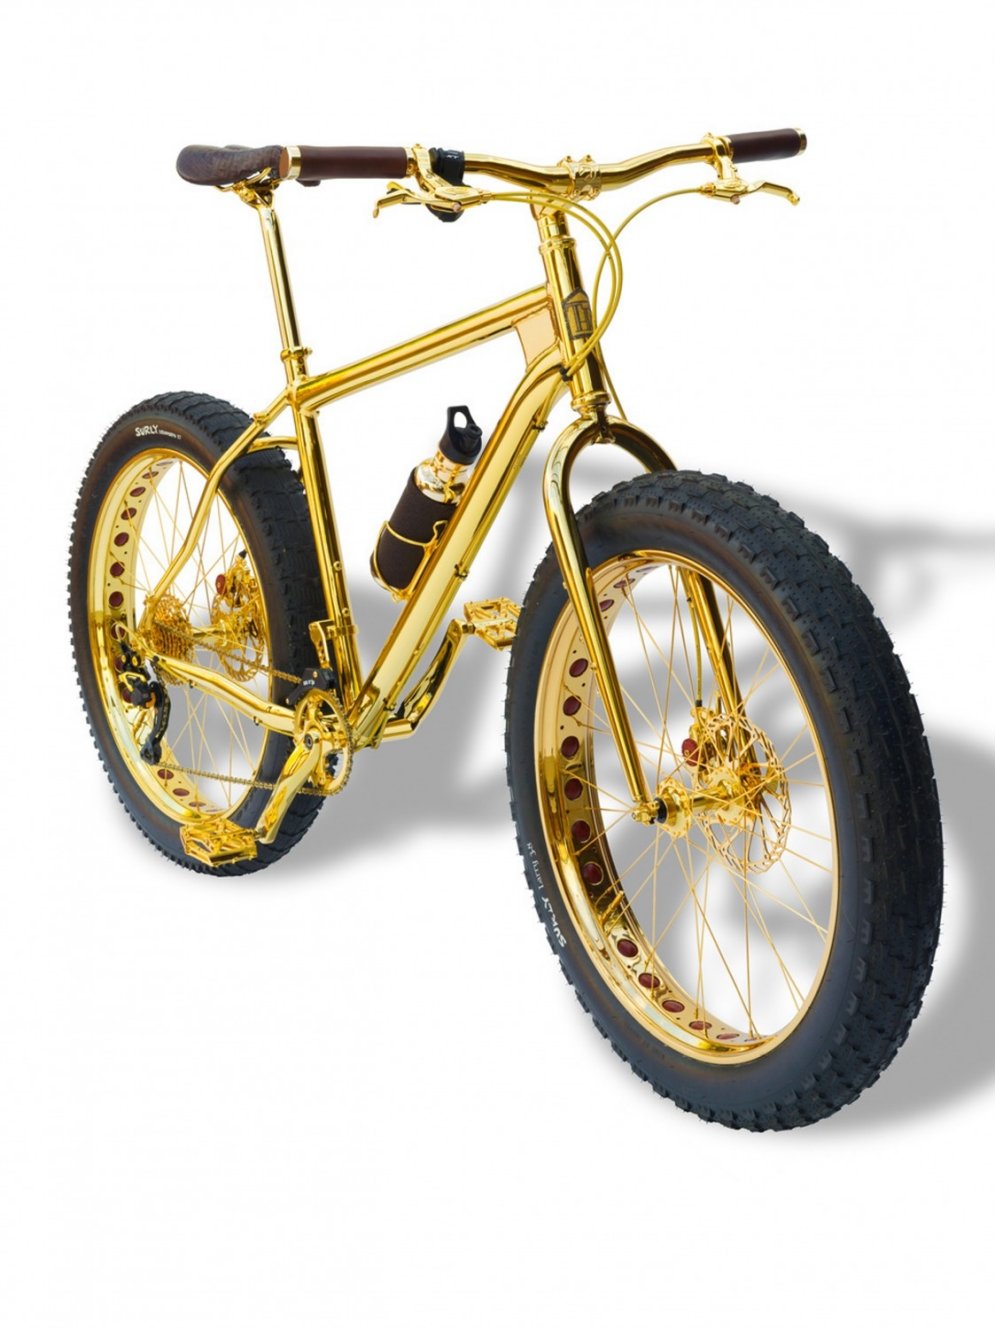 Lietderīgs pirkums - zelta velosipēds